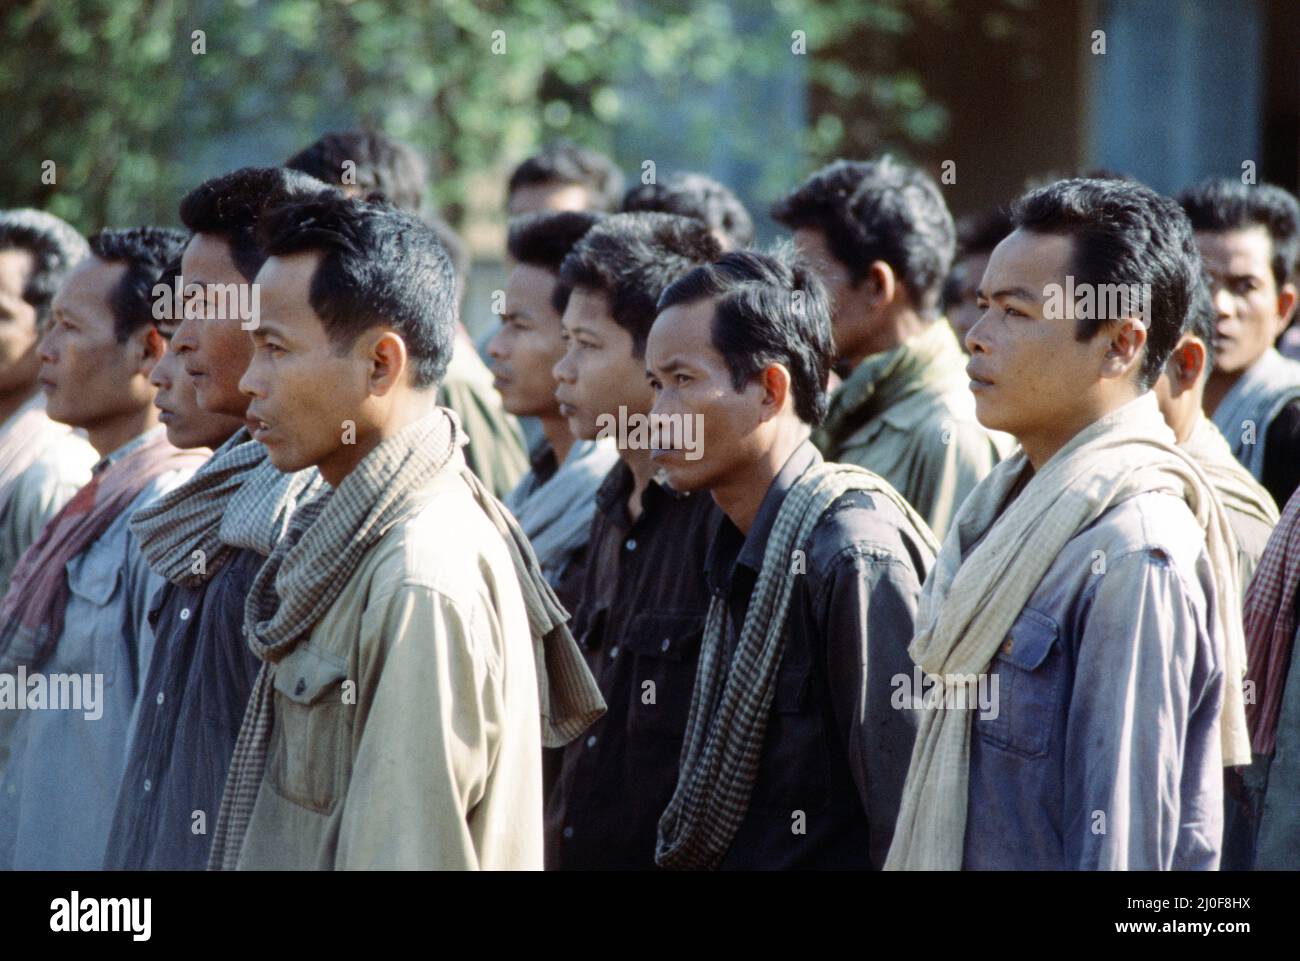 Tod einer Nation. In Kambodscha ist eine unglaubliche menschliche Katastrophe geschehen, wo schätzungsweise zwei Millionen Menschen von einem fanatischen Regime getötet wurden, dessen offensichtliches Ziel es war, jeden und alles, was mit der modernen Welt in Verbindung steht, auszulöschen. Die Beweise für dieses entsetzliche Massaker kommen erst jetzt ans Licht, nachdem fast vier Jahre Folter, Hunger und Massenmord in gigantischem Ausmaß begangen wurden. Im Bild, gefangen genommen Khmer Rouge. September 1979. Stockfoto